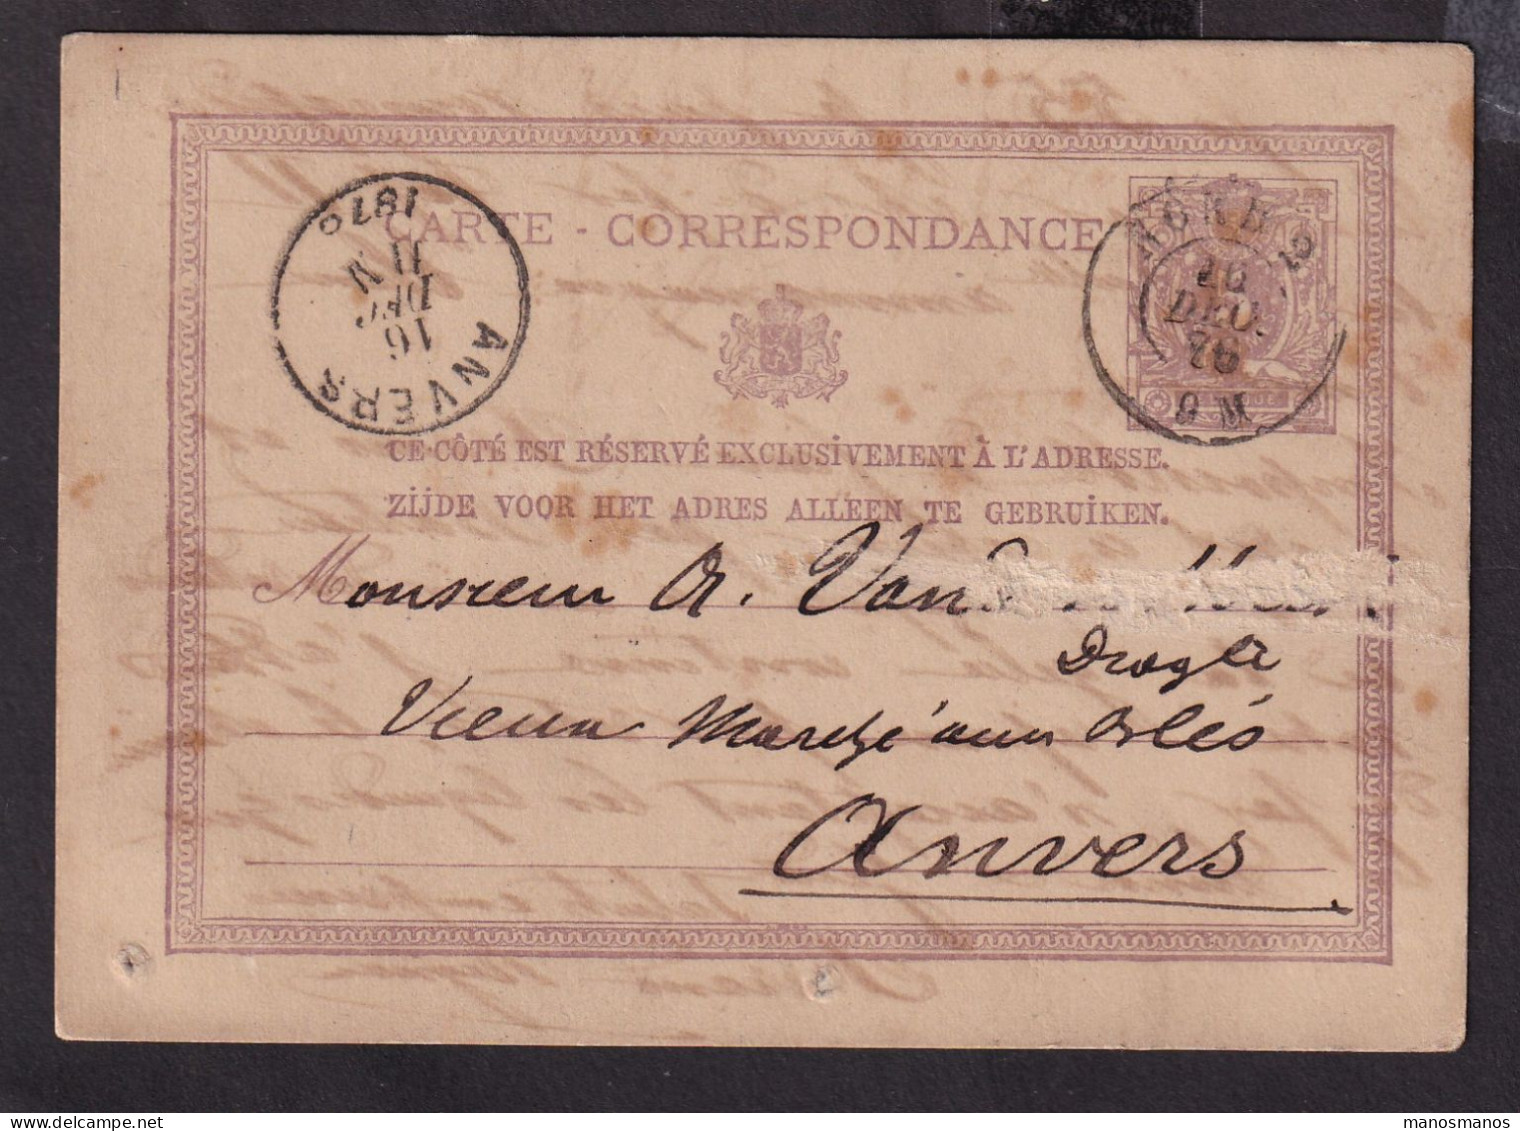 DDFF 183 --  Entier Postal Lion Couché Double Cercle AMBULANT NORD 2 1876 De BXL à ANVERS - Coba 30 EUR S/TP Détaché - Ambulante Stempels